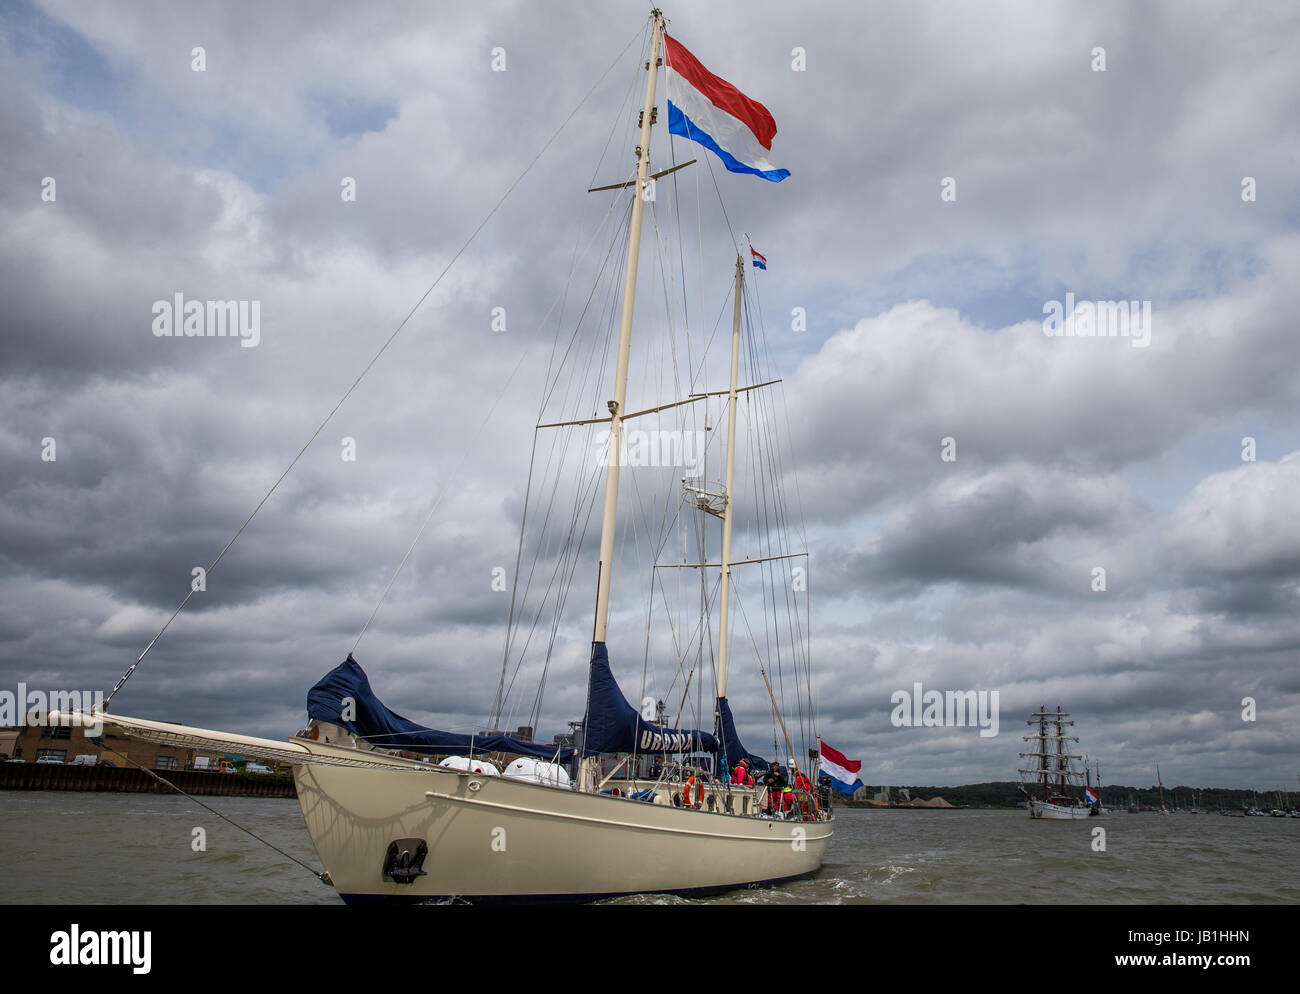 Une flottille hollandaise reçoit un hommage de HH Prins Maurits au Château supérieur, dans le cadre de la commémoration Bataille de Medway. Banque D'Images